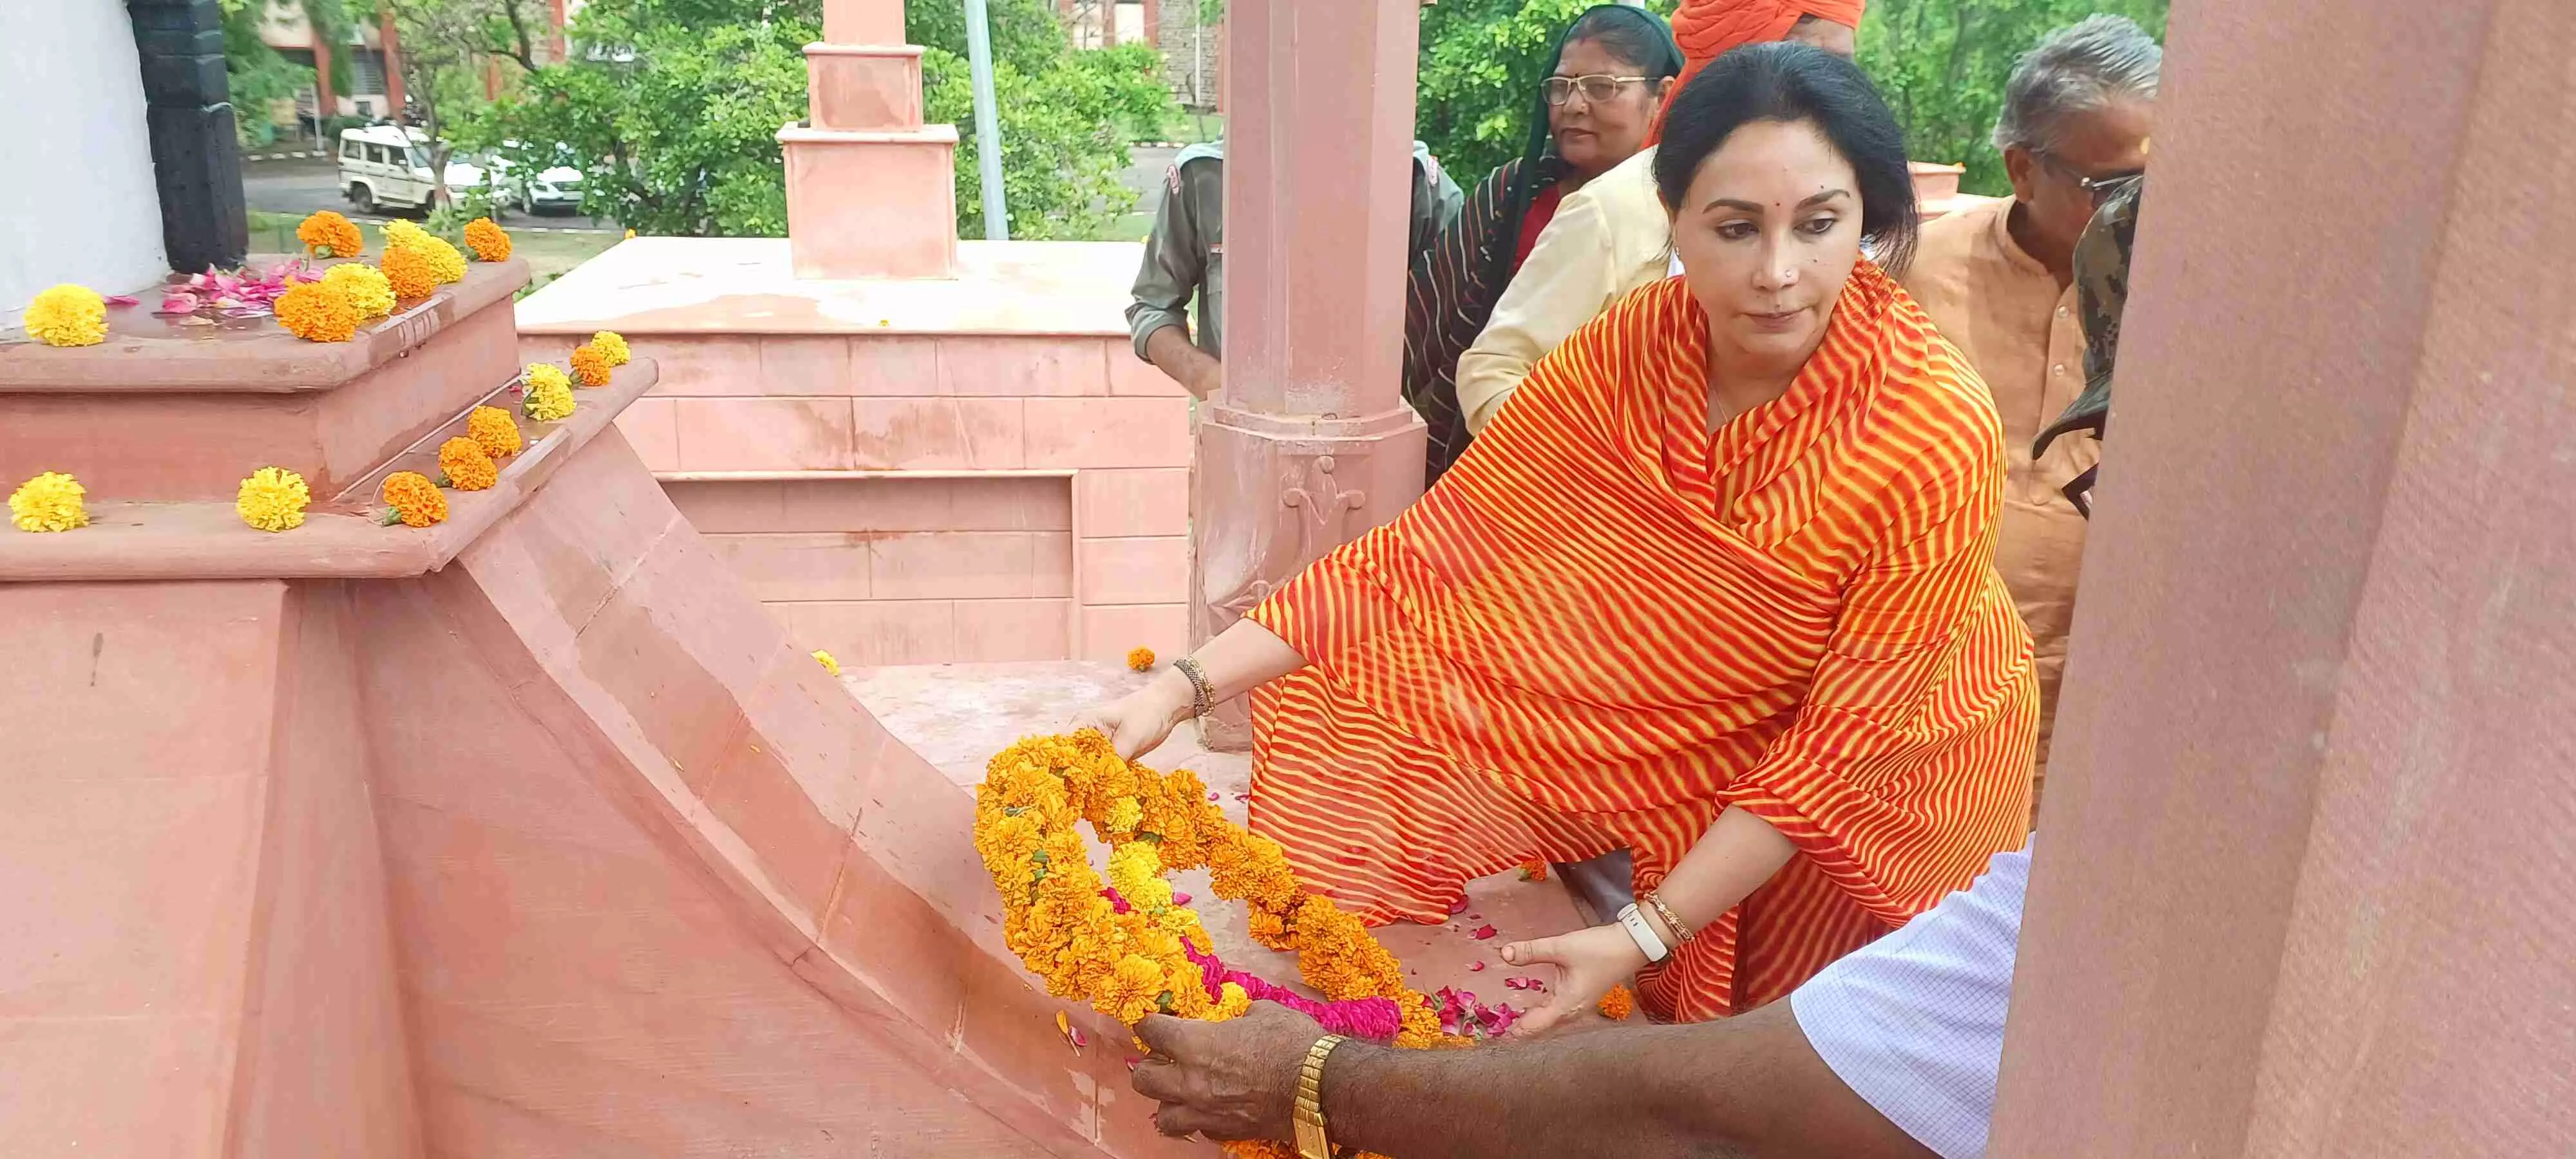 Dausa उपमुख्यमंत्री दिया कुमारी ने पुष्पचक्र र्अपित कर शहीदों को किया नमन